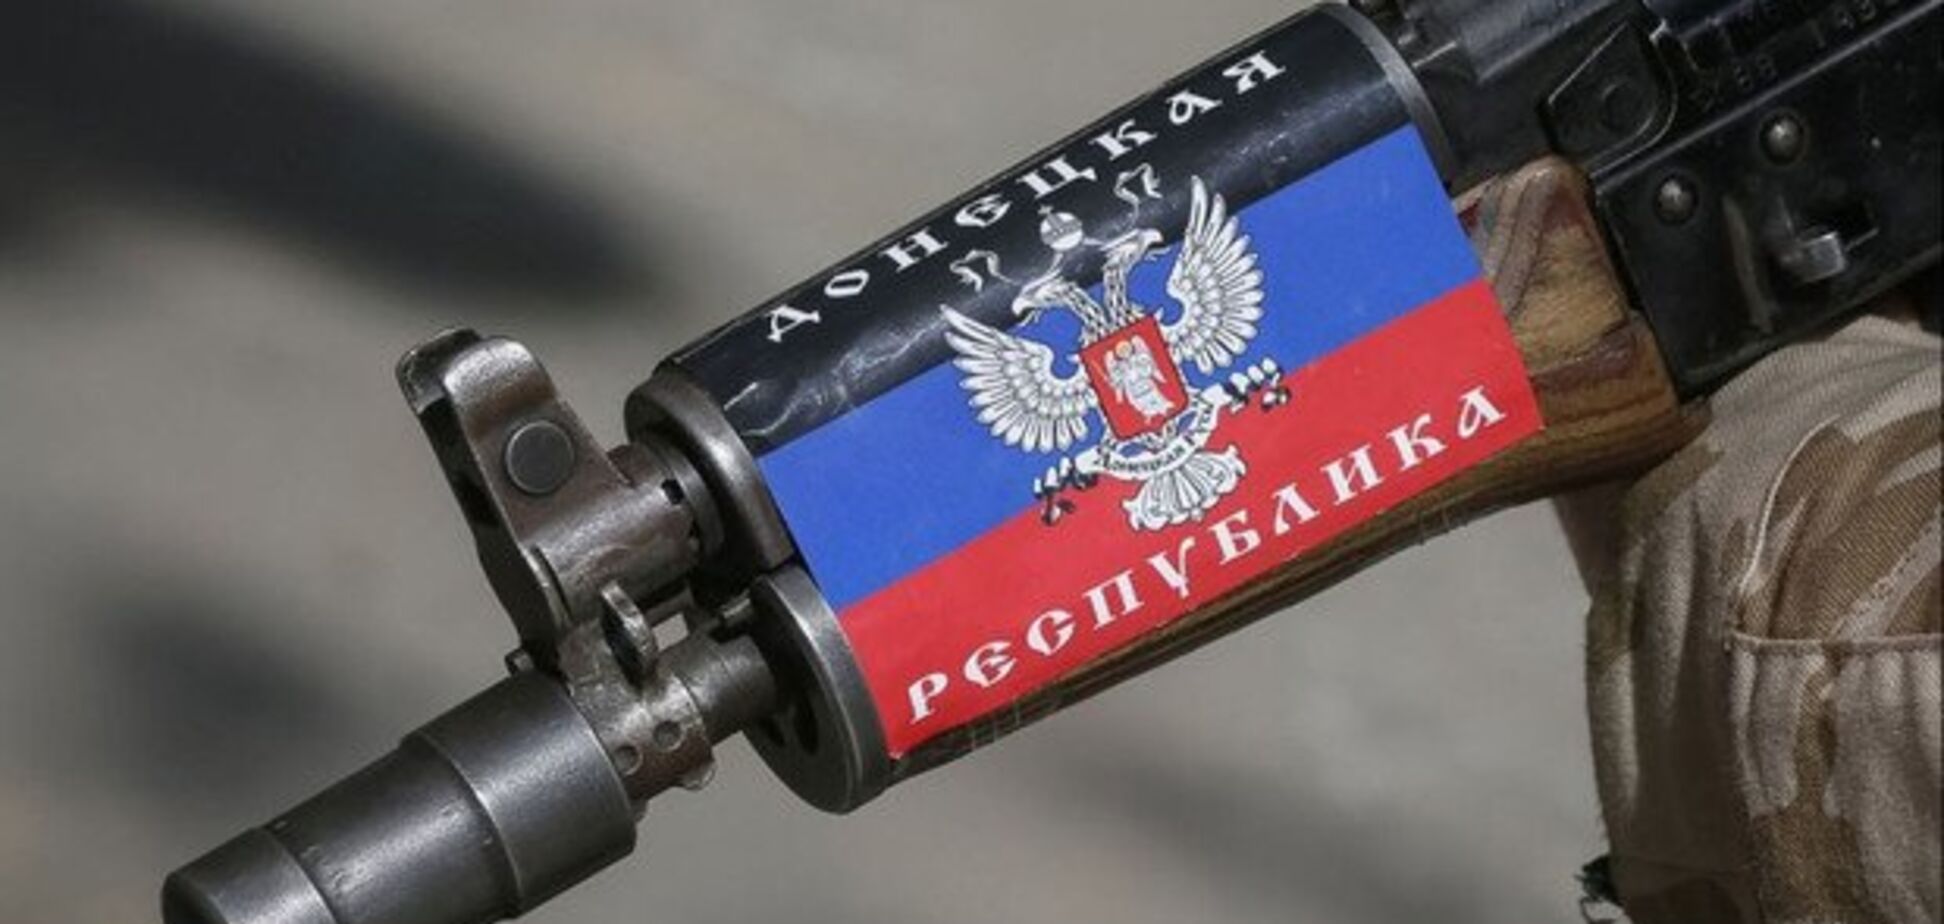  Нервы сдали? Террористы на Донбассе устроили разборки с оружием